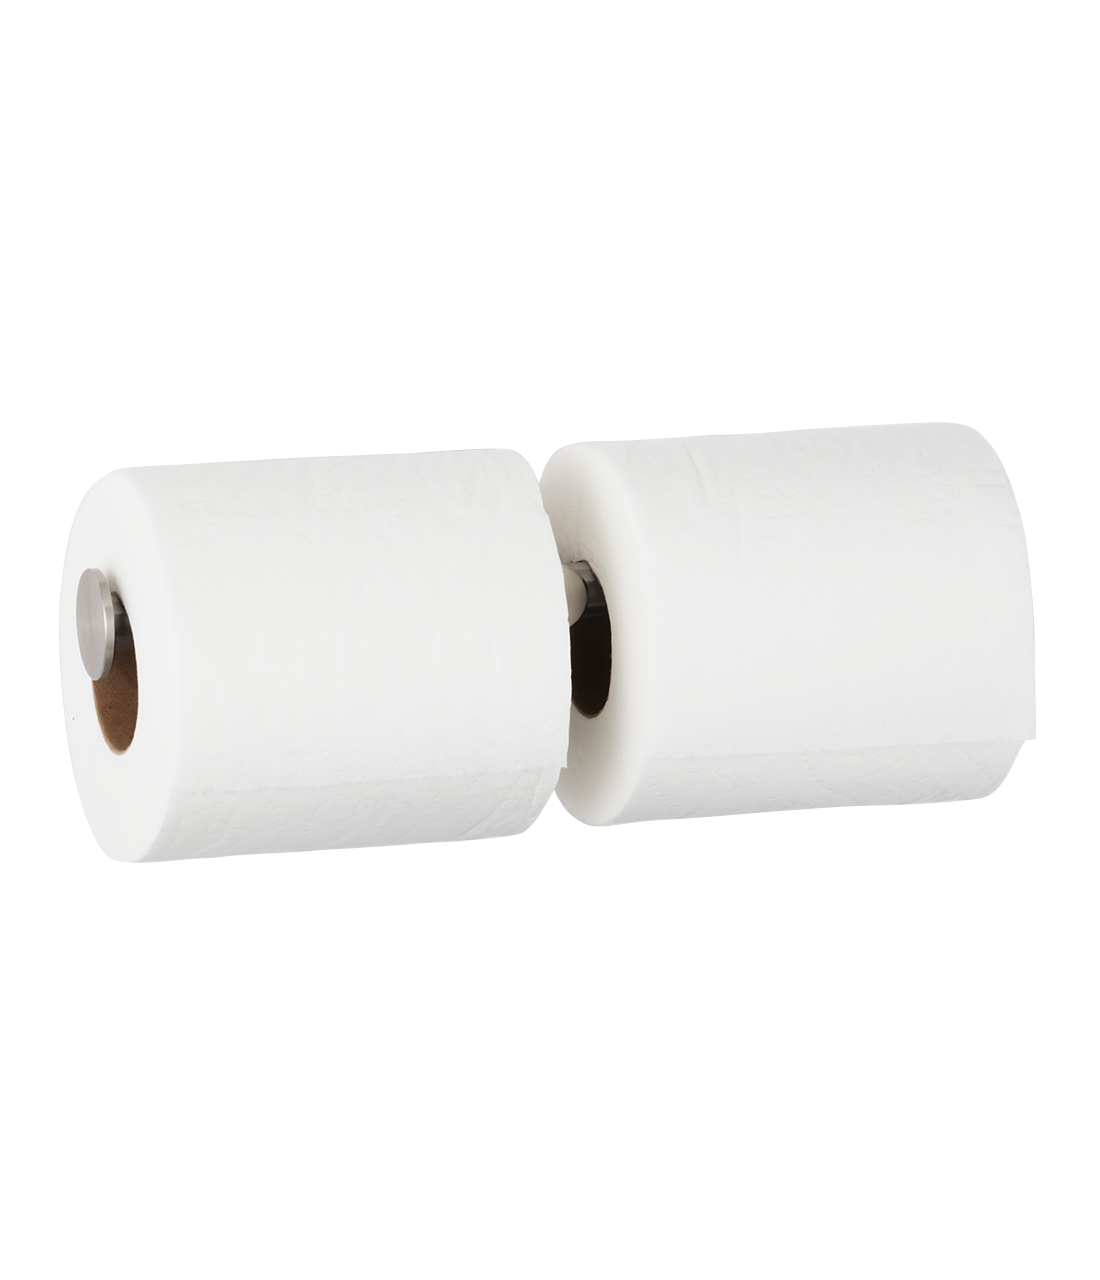 Doble portarrollos profesional de papel hygiénico estándar - SUPRATECH 